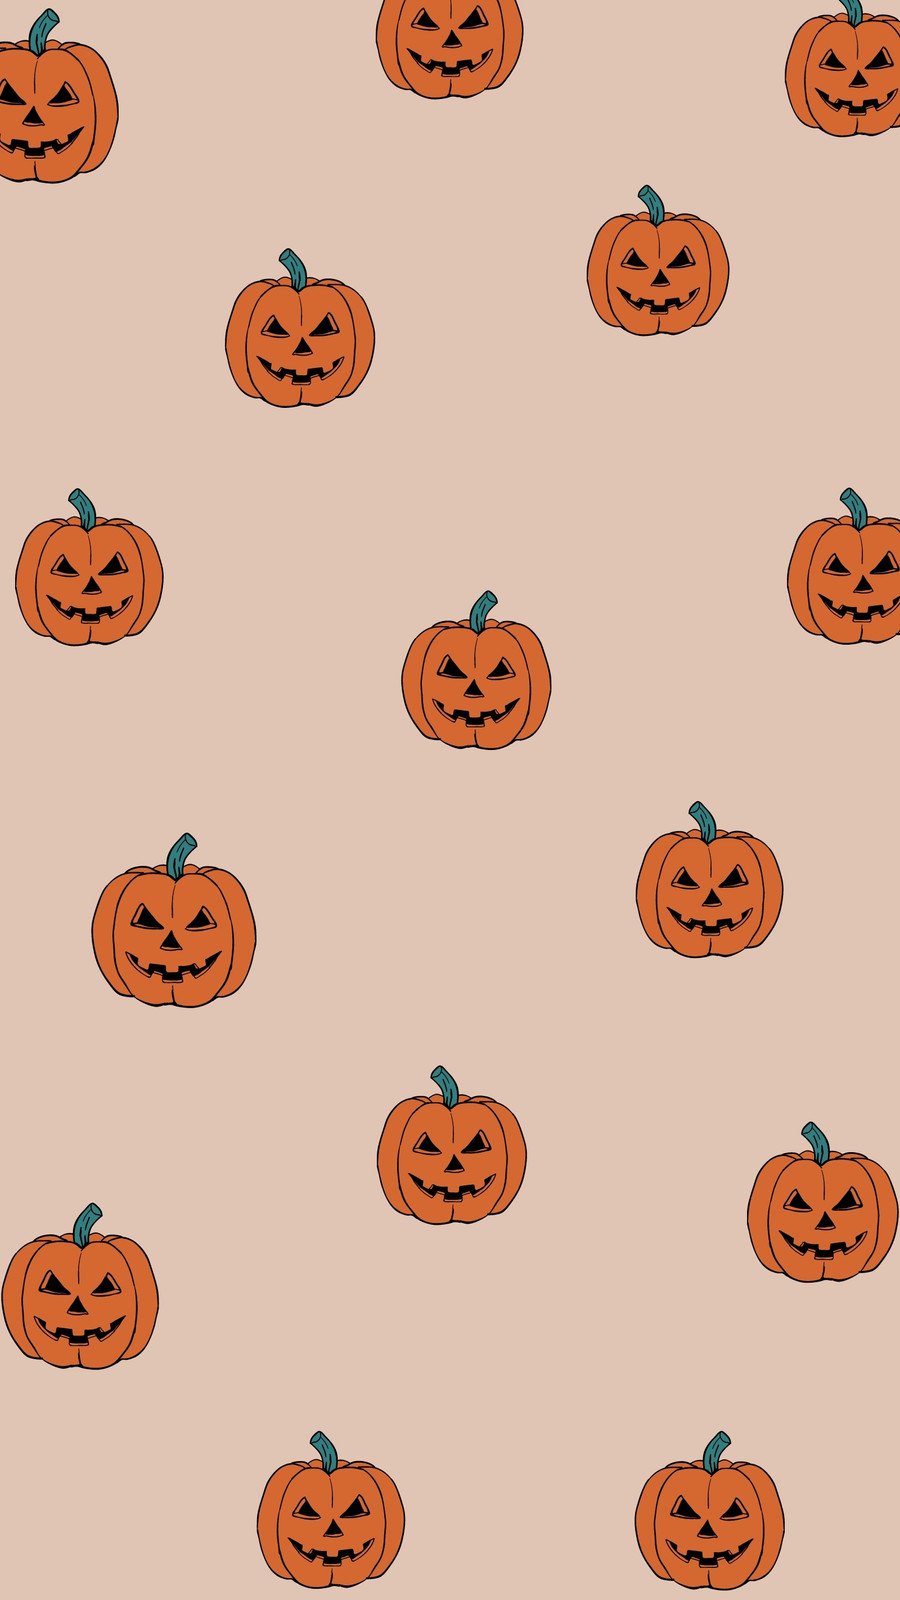 Wallpaper Holiday Halloween 31 october pumpkin host Holidays 12311